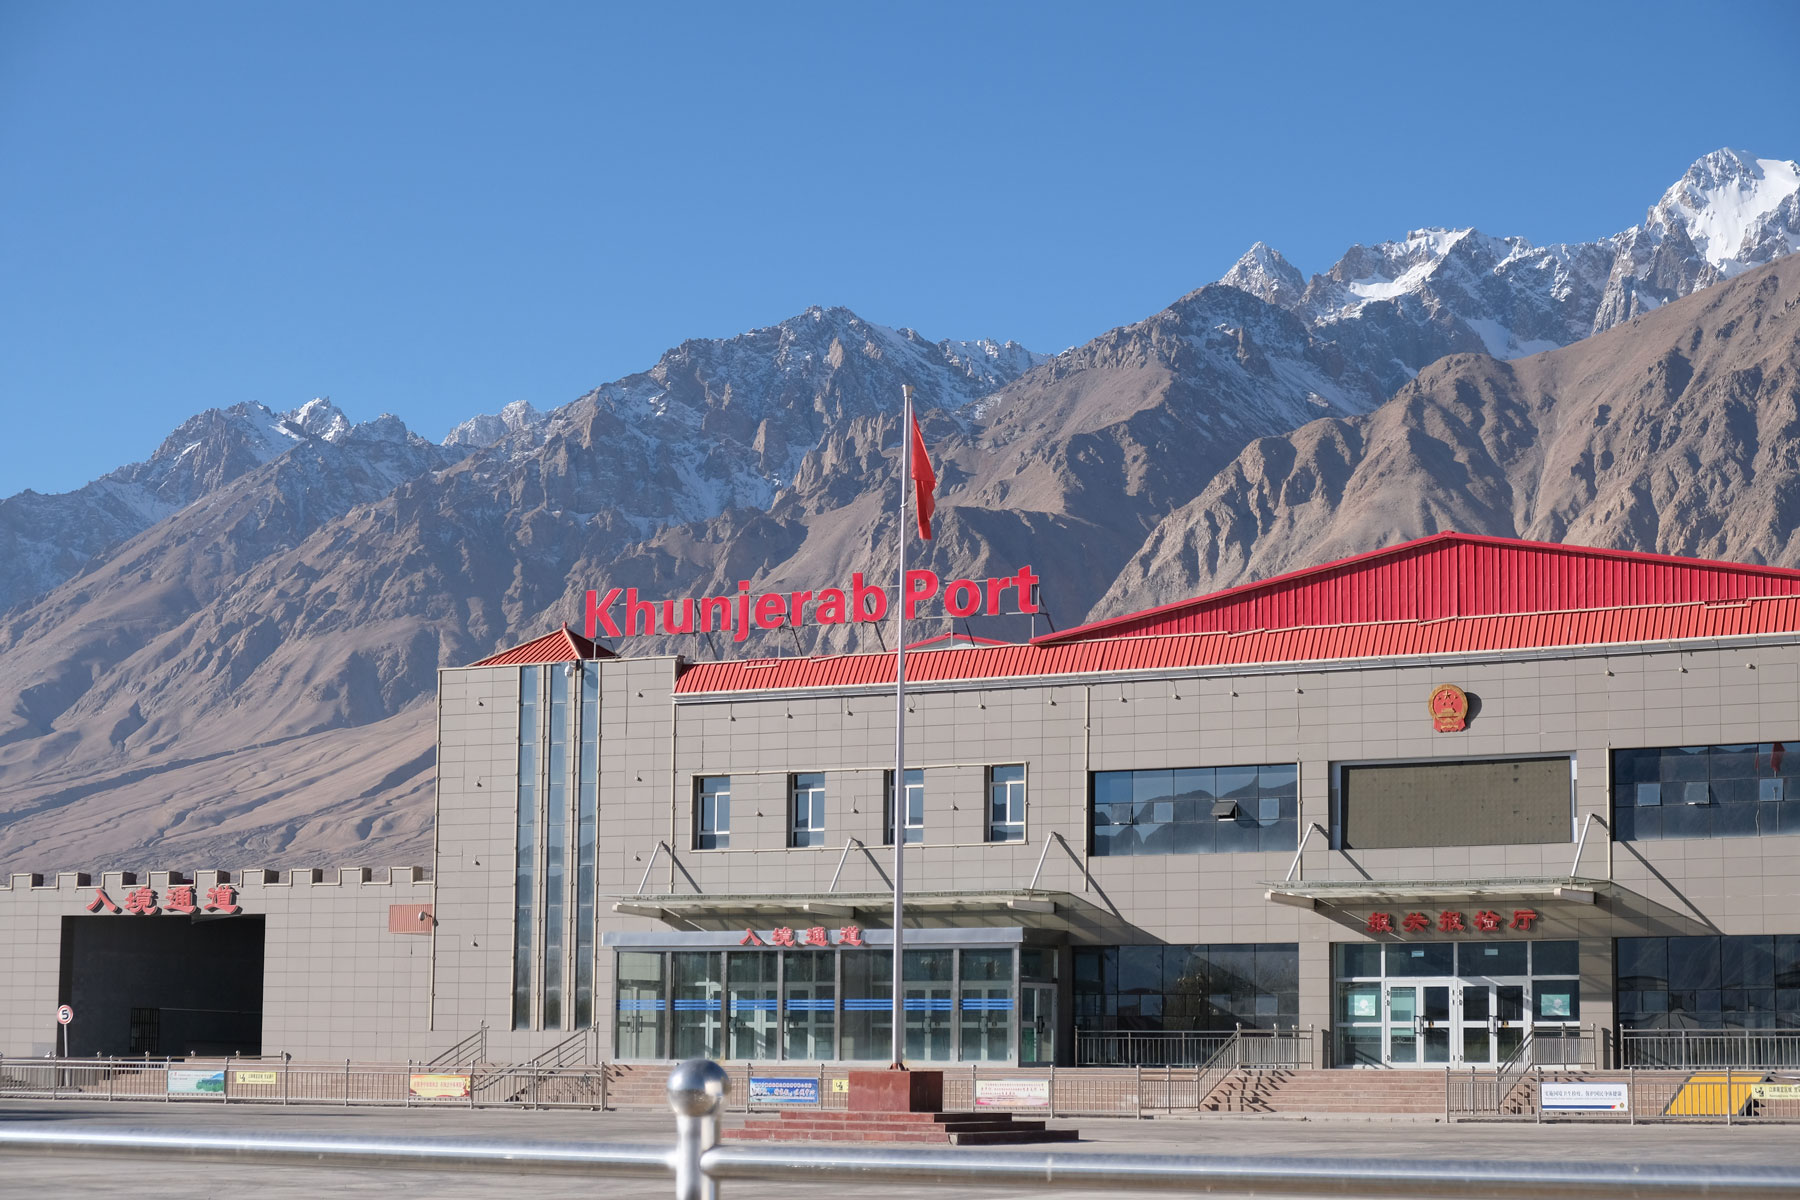 Chinesisches Ausreisegebäude mit der Aufschrift "Kunjerab Port" in Tashkurgan.